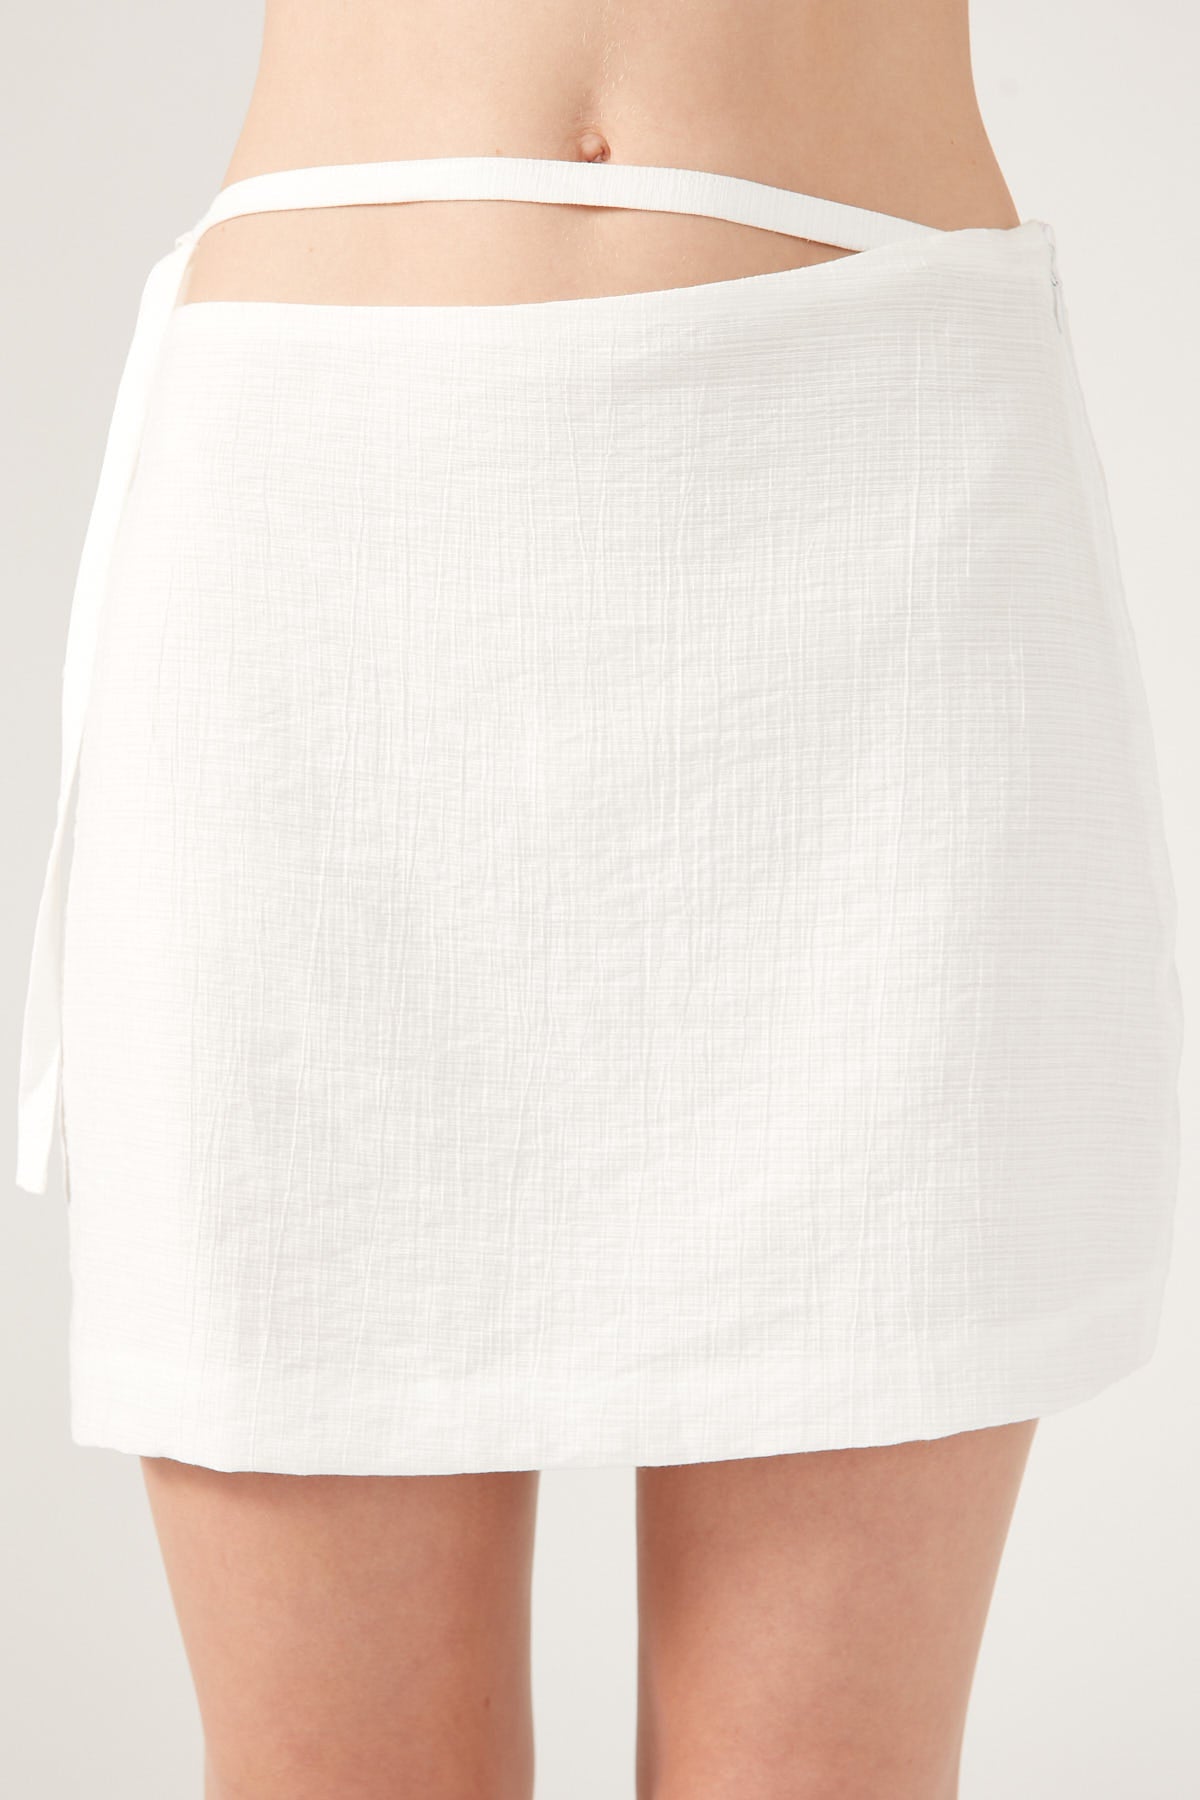 Perfect Stranger Dominique Elissa Golden Hour Tie Side Mini Skirt White